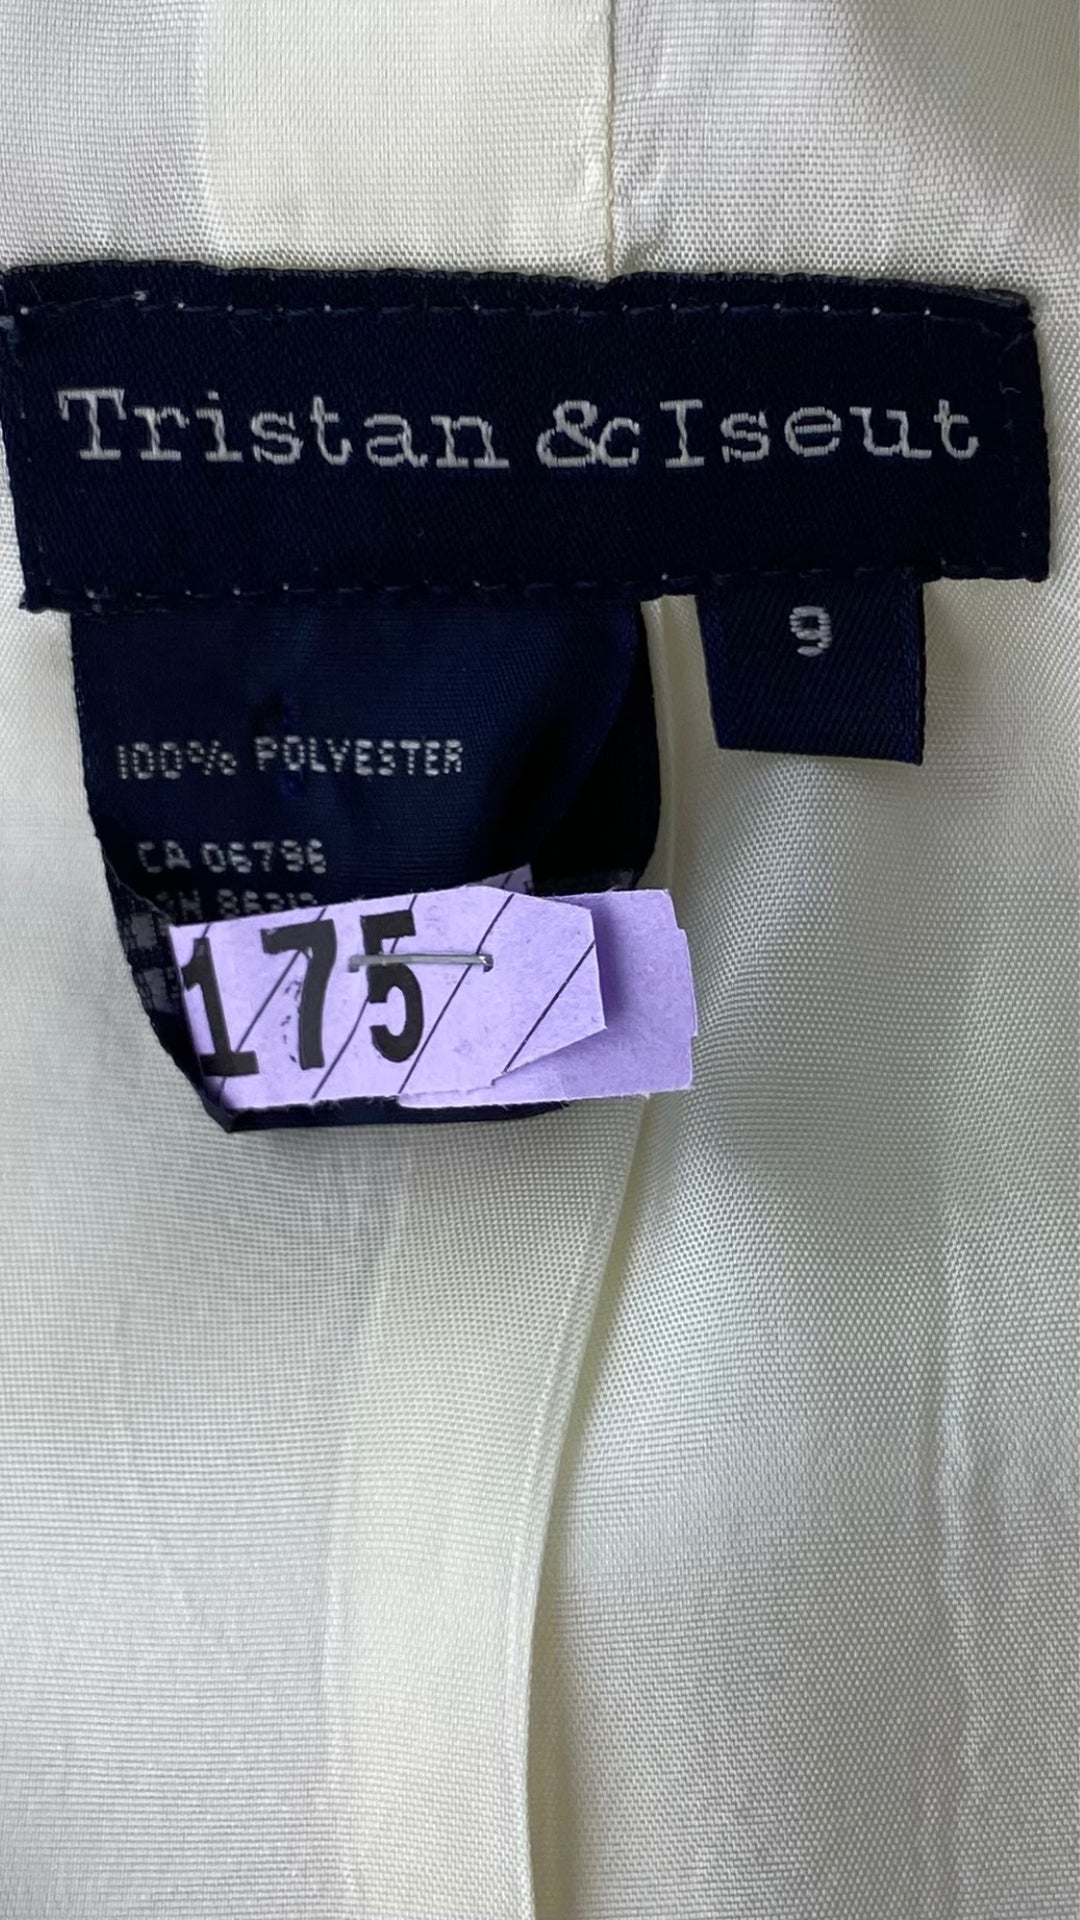 Blazer estival crème Tristan & Iseut, taille 9 (medium). Vue de l'étiquette de marque, taille, composition.